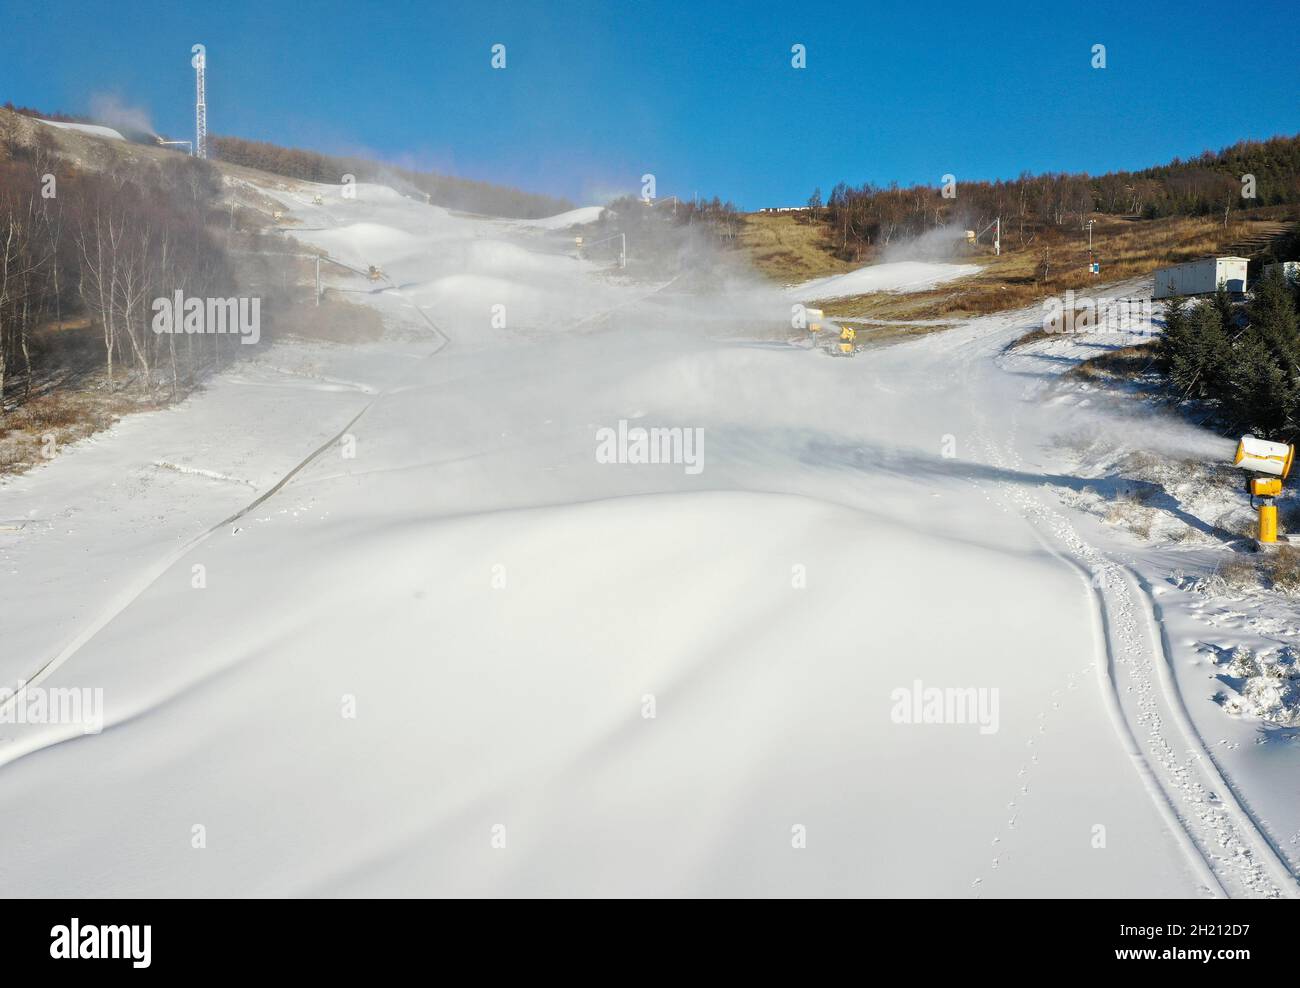 Zhangjiakou. Oktober 2021. Das Luftbild, das am 19. Oktober 2021 aufgenommen wurde, zeigt Beschneiungsmaschinen, die auf einem Skifeld im Bezirk Chongli der Stadt Zhangjiakou in der nordchinesischen Provinz Hebei arbeiten. Die Skigebiete in der Wettbewerbszone Zhangjiakou haben begonnen, künstlichen Schnee zu machen, um sich auf die bevorstehenden Olympischen Winterspiele 2022 in Peking vorzubereiten. Quelle: Wu Diansen/Xinhua/Alamy Live News Stockfoto